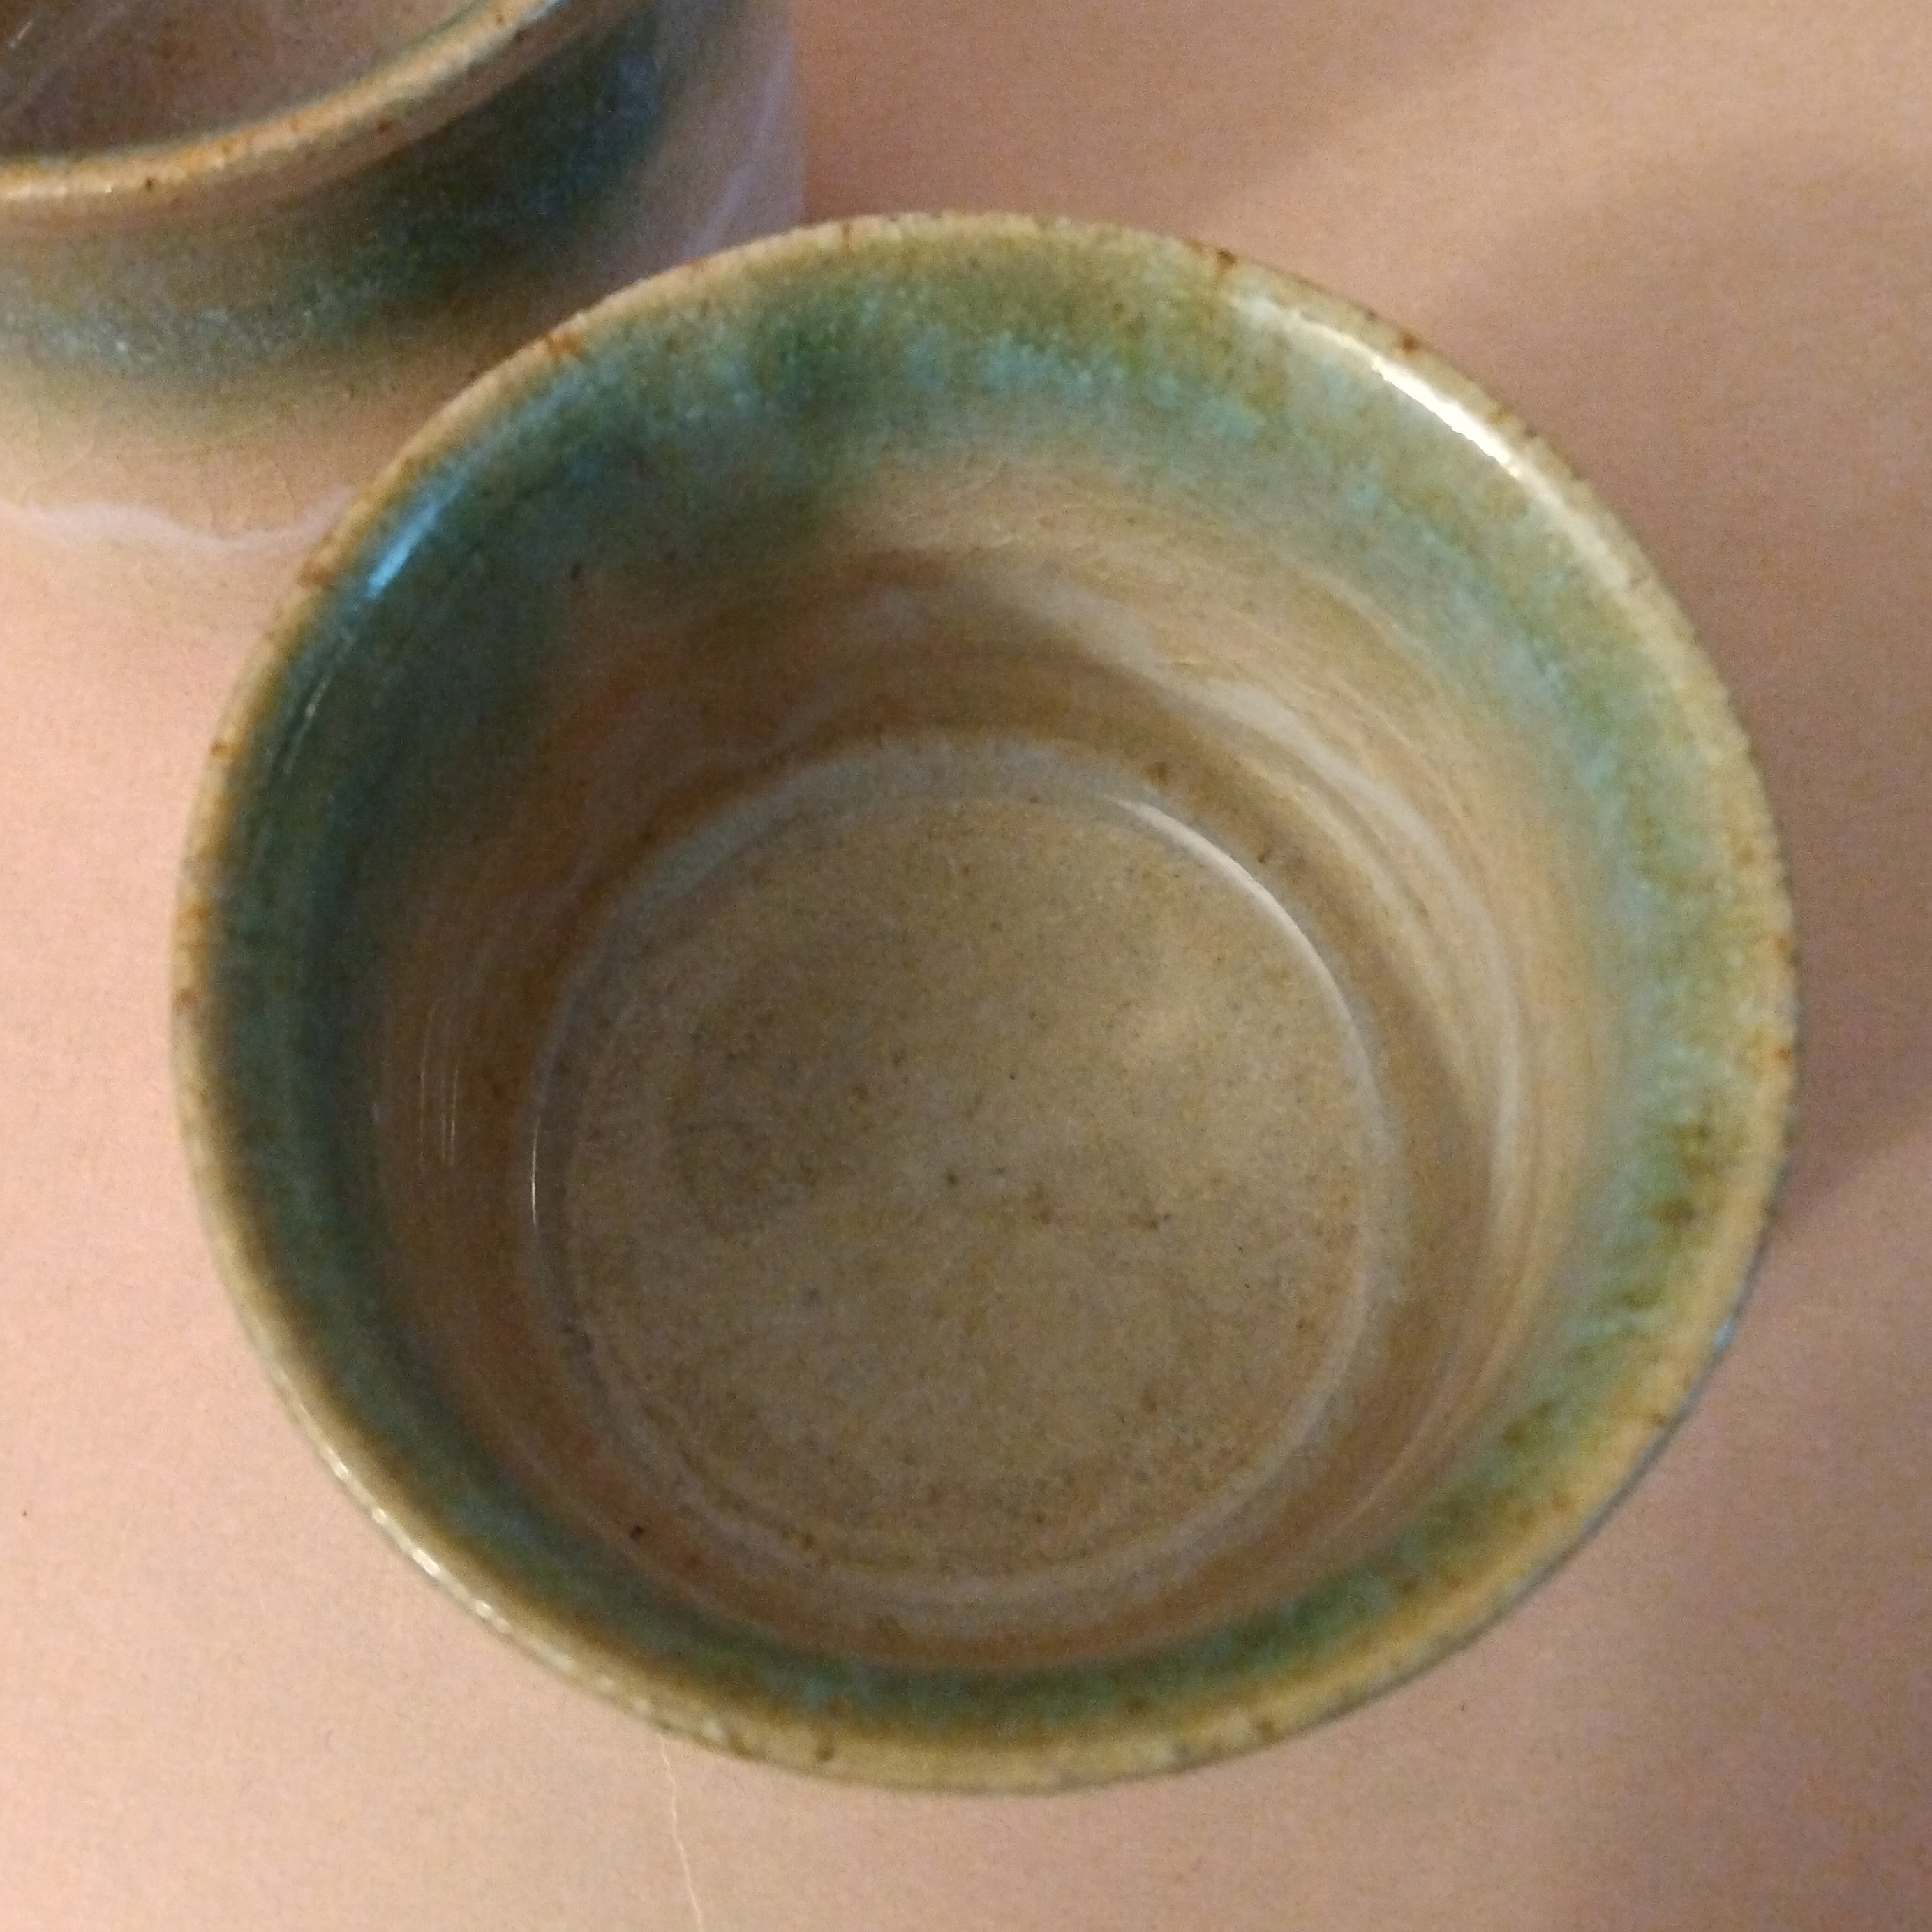 Tsutsumi-yaki Yunomi, Tea Cups; Kenba Kiln, Sendai, Miyagi Prefecture